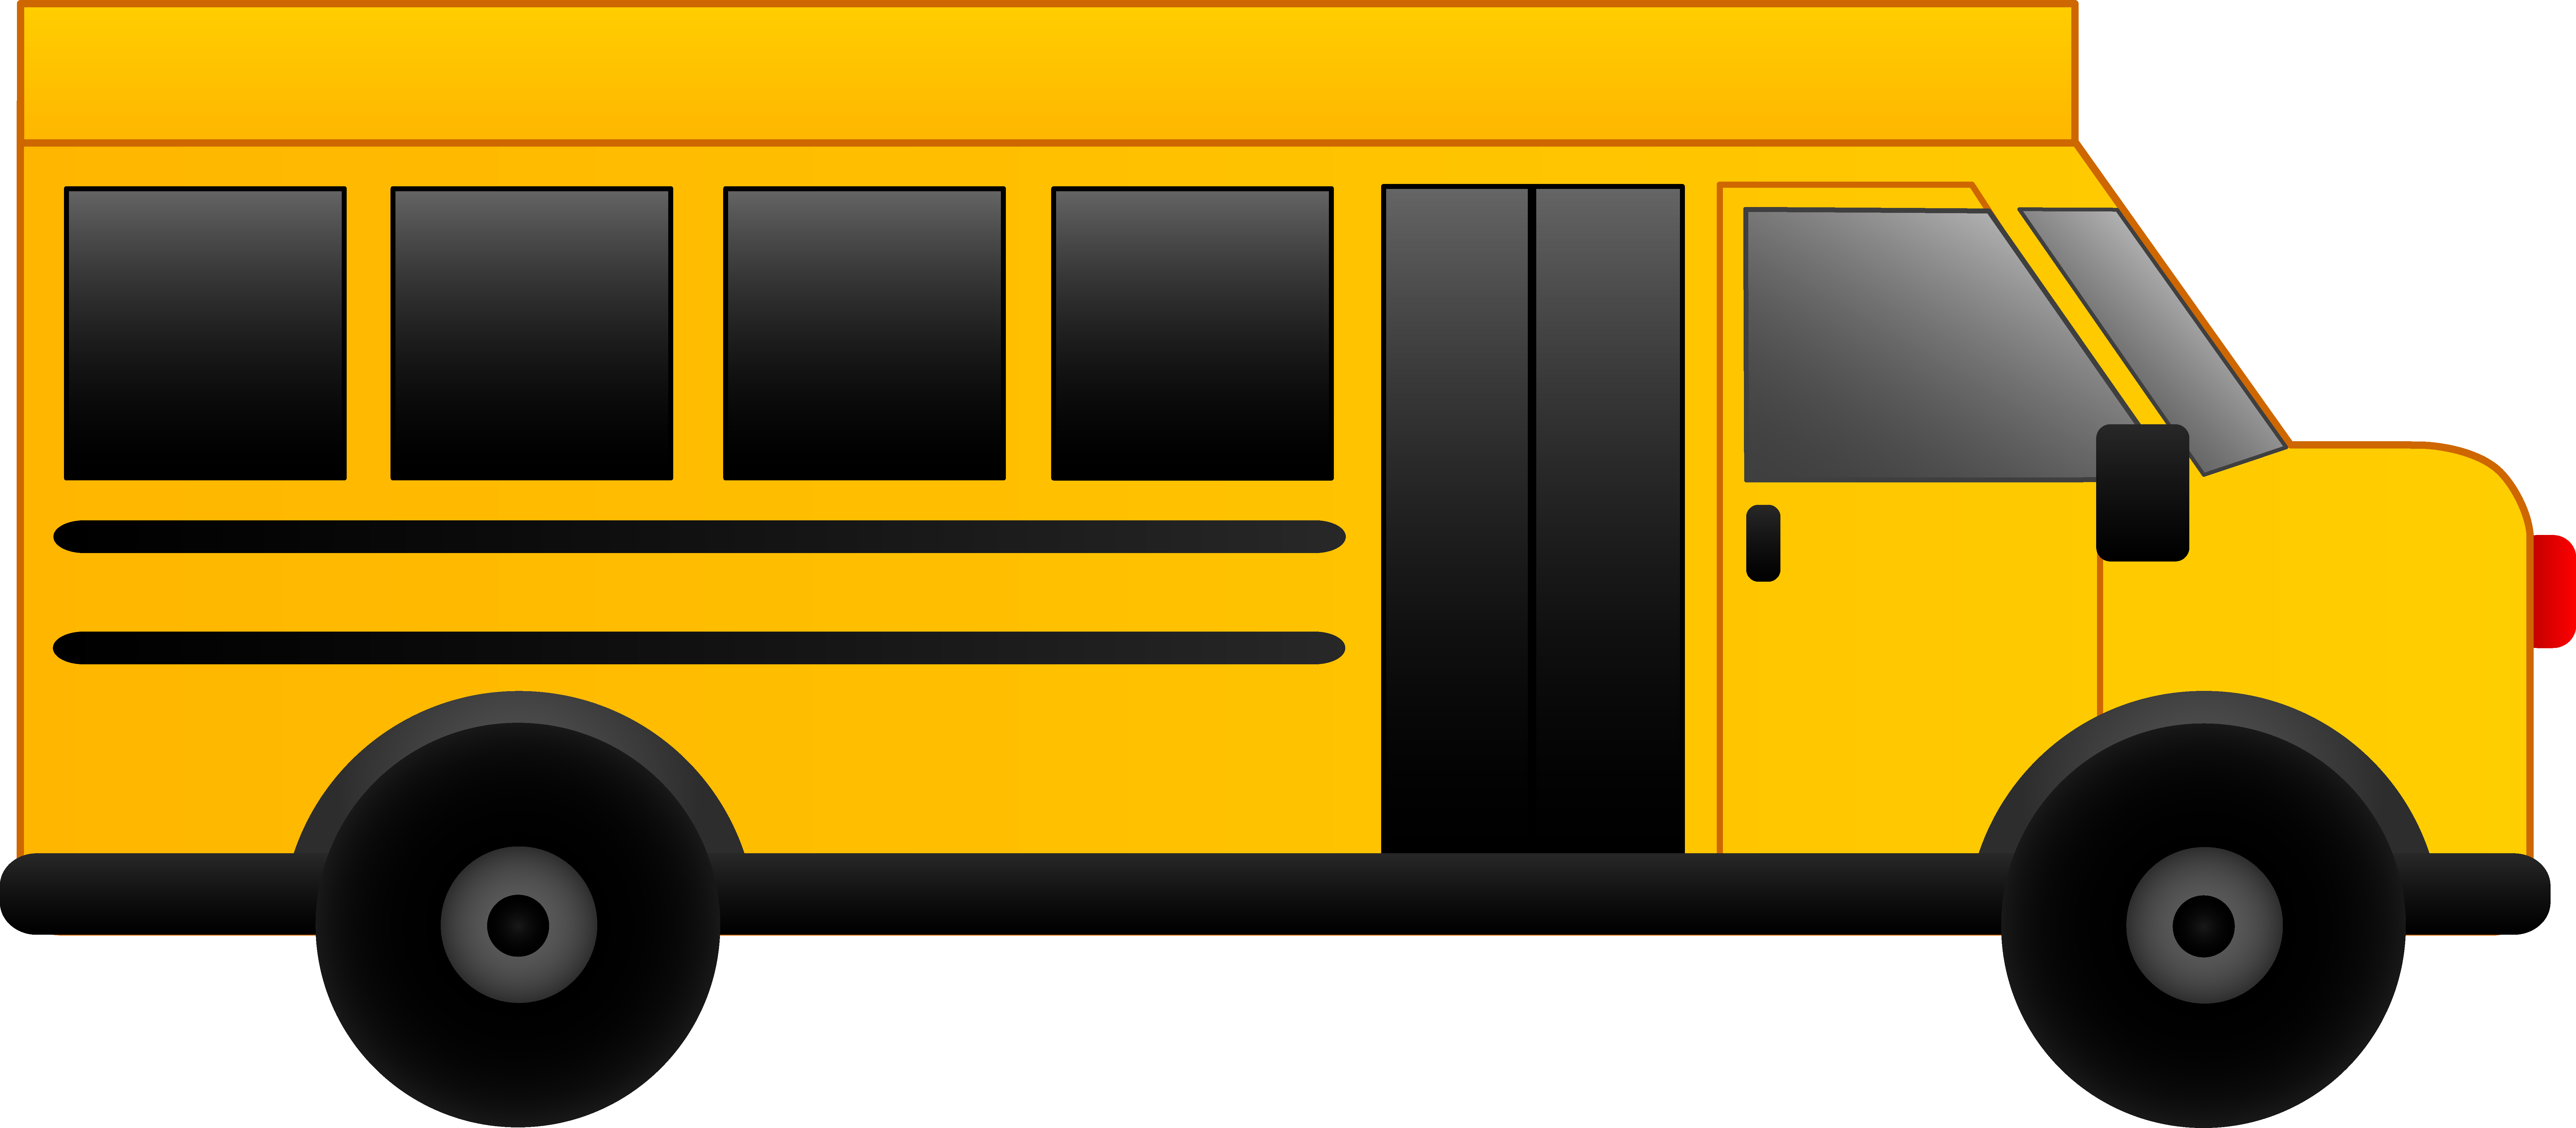 El bus on school buses buses 